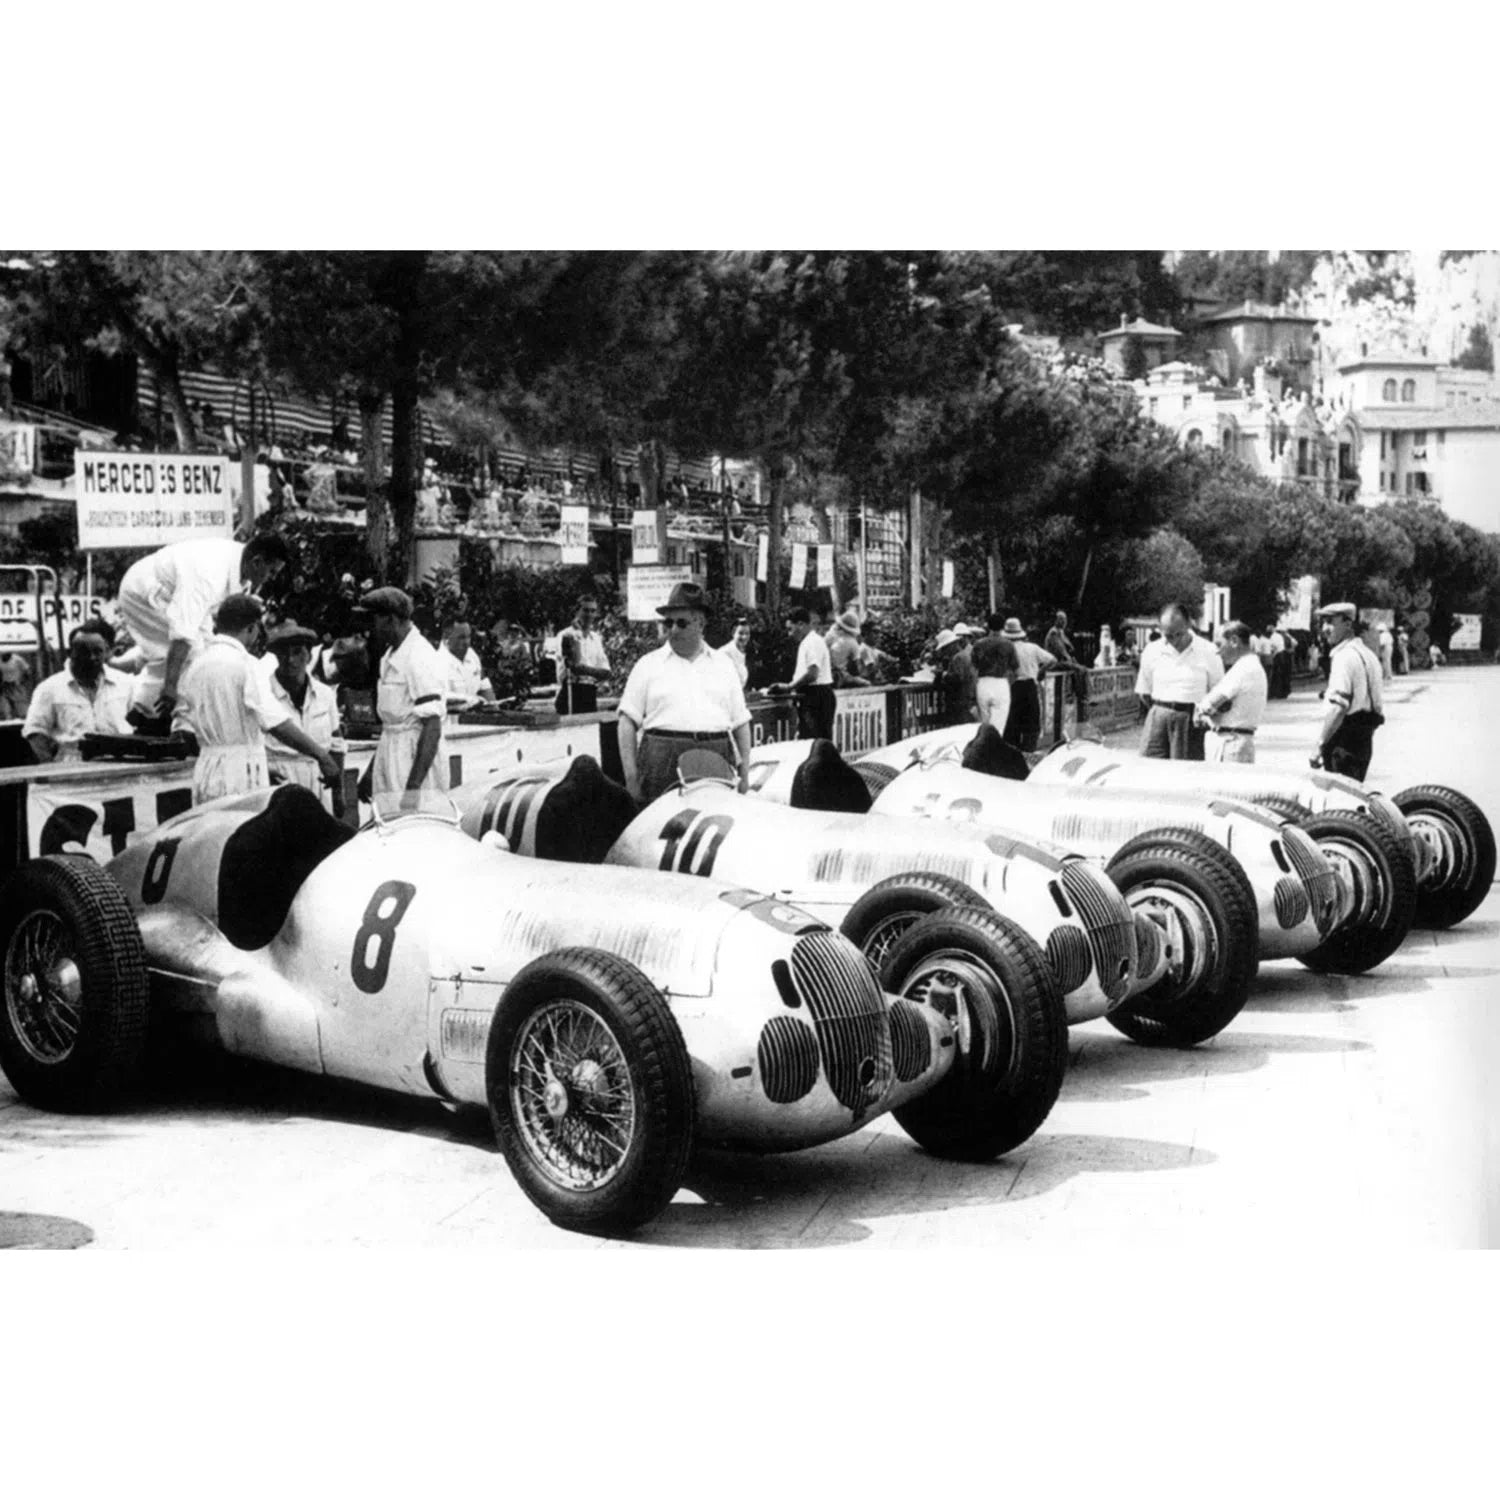 Présentation des voitures pour la course à Monaco-Imagesdartistes